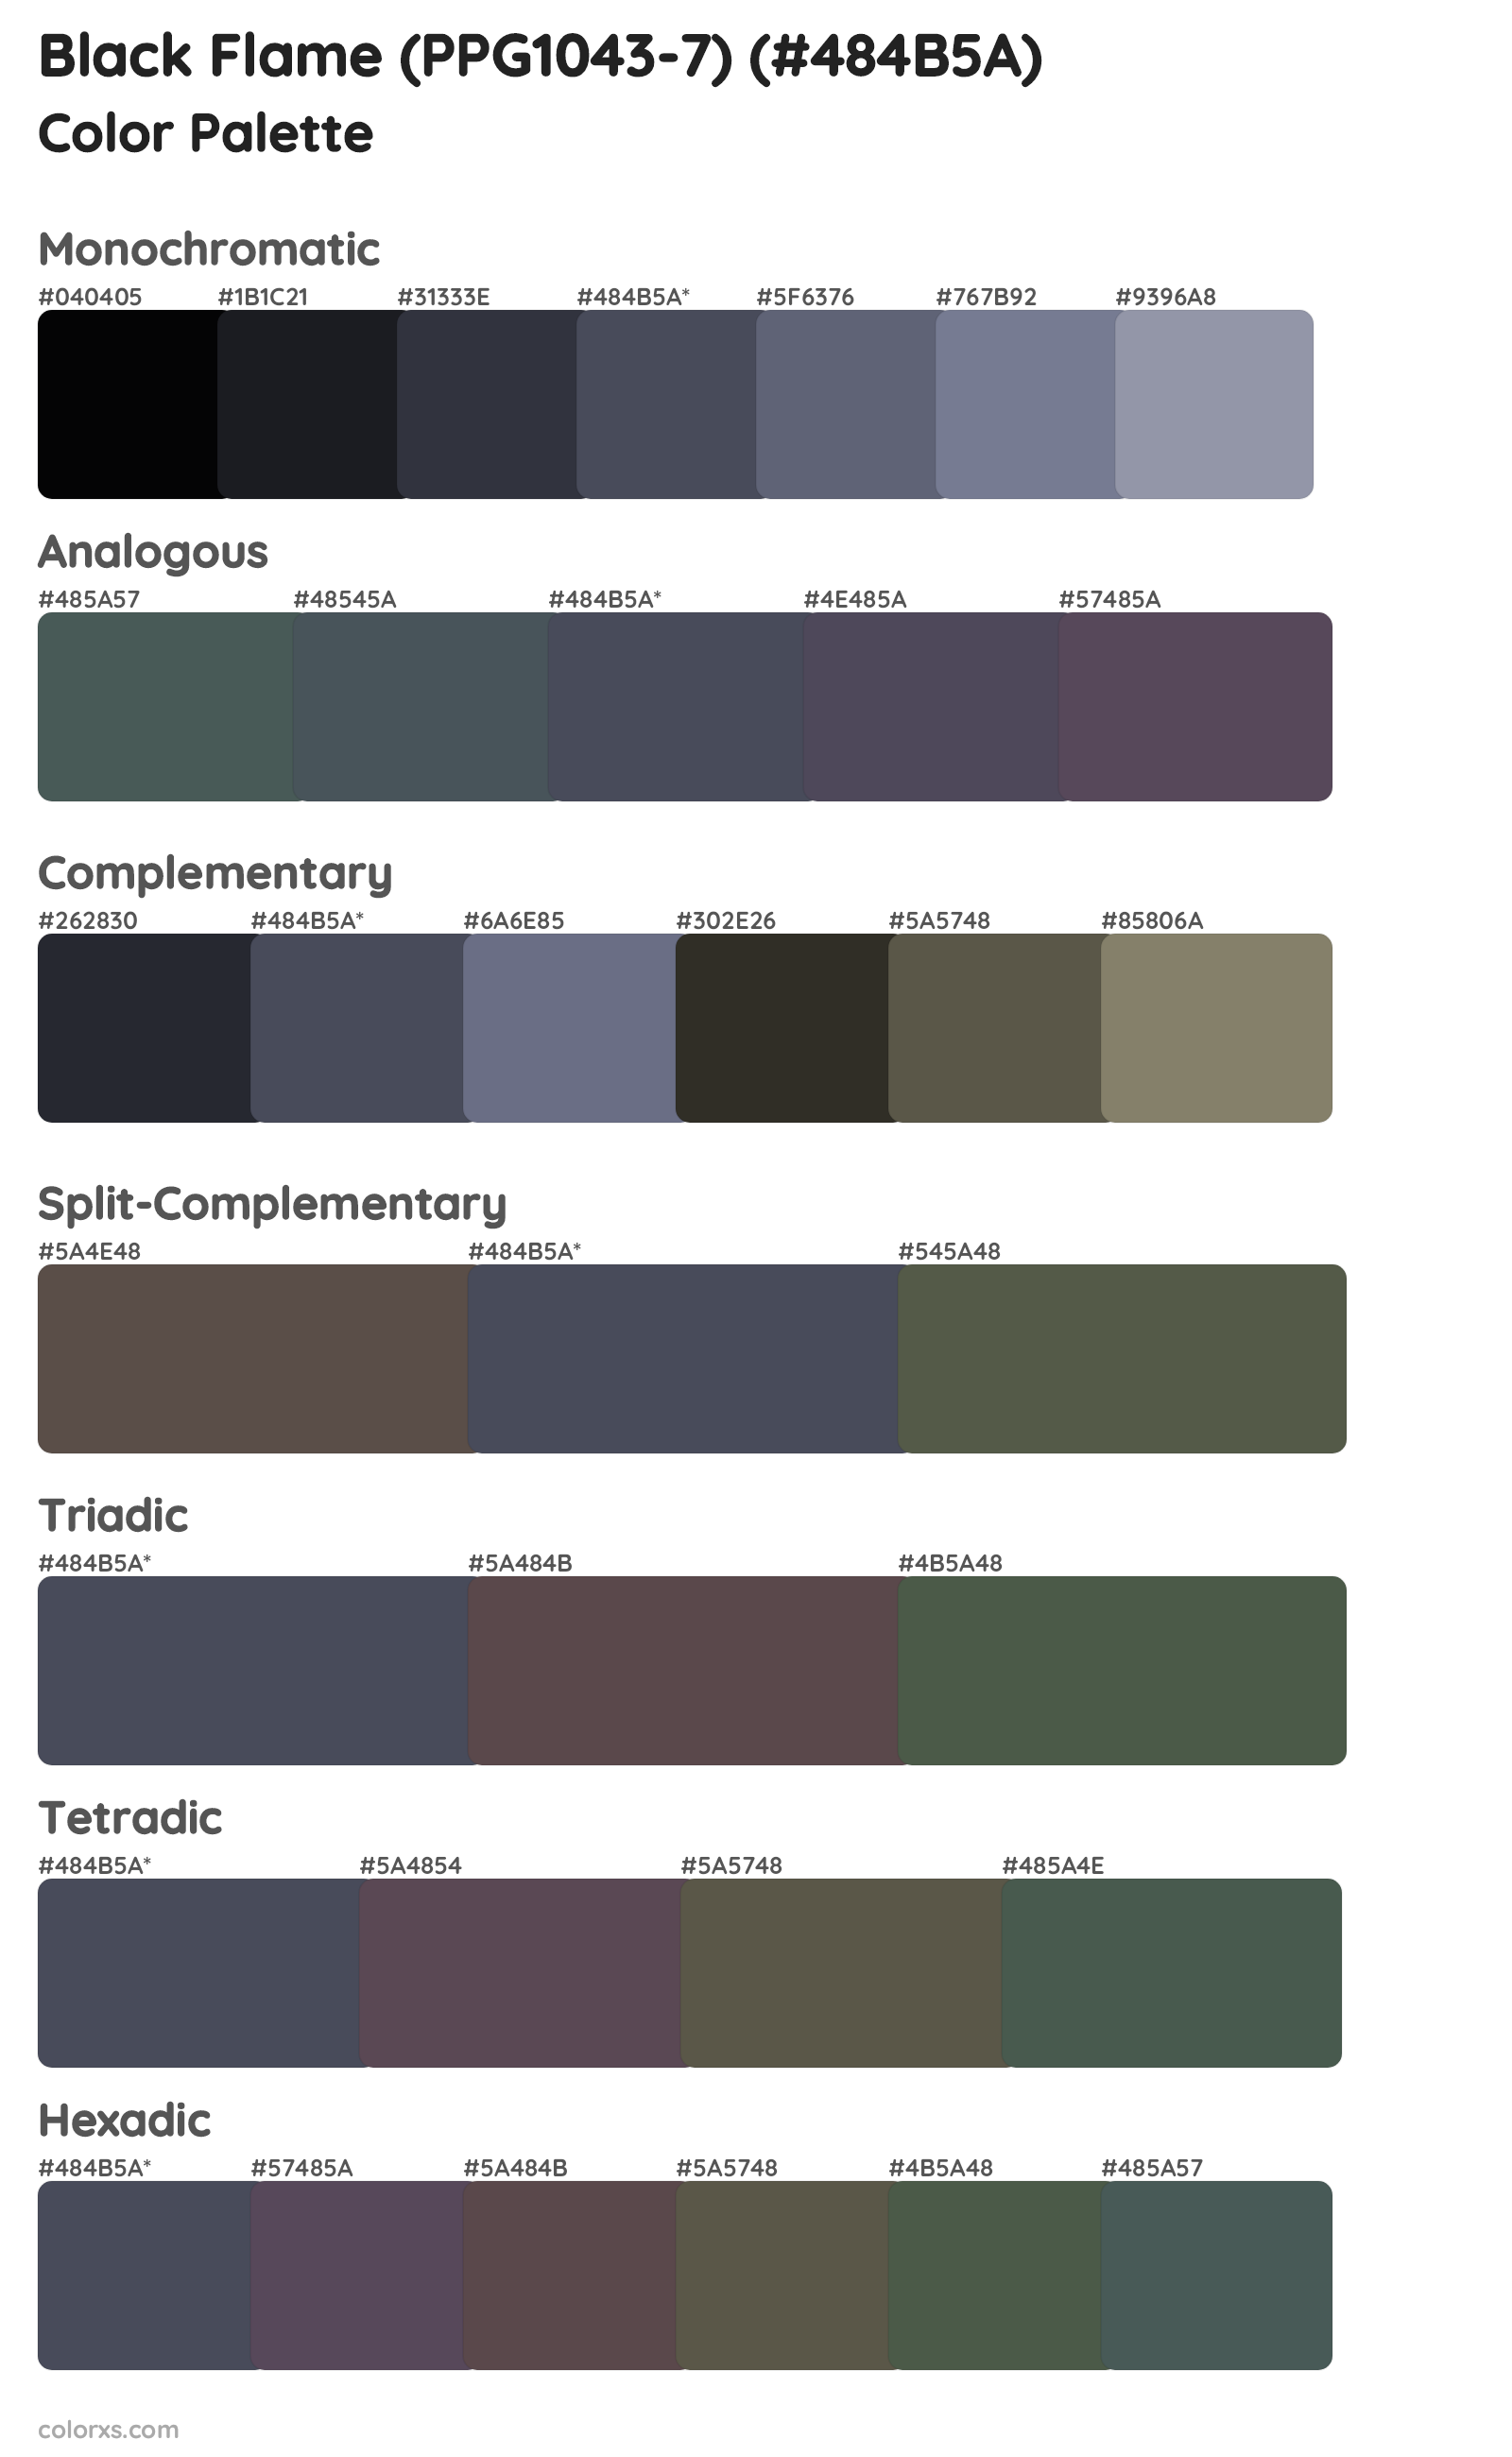 Black Flame (PPG1043-7) Color Scheme Palettes